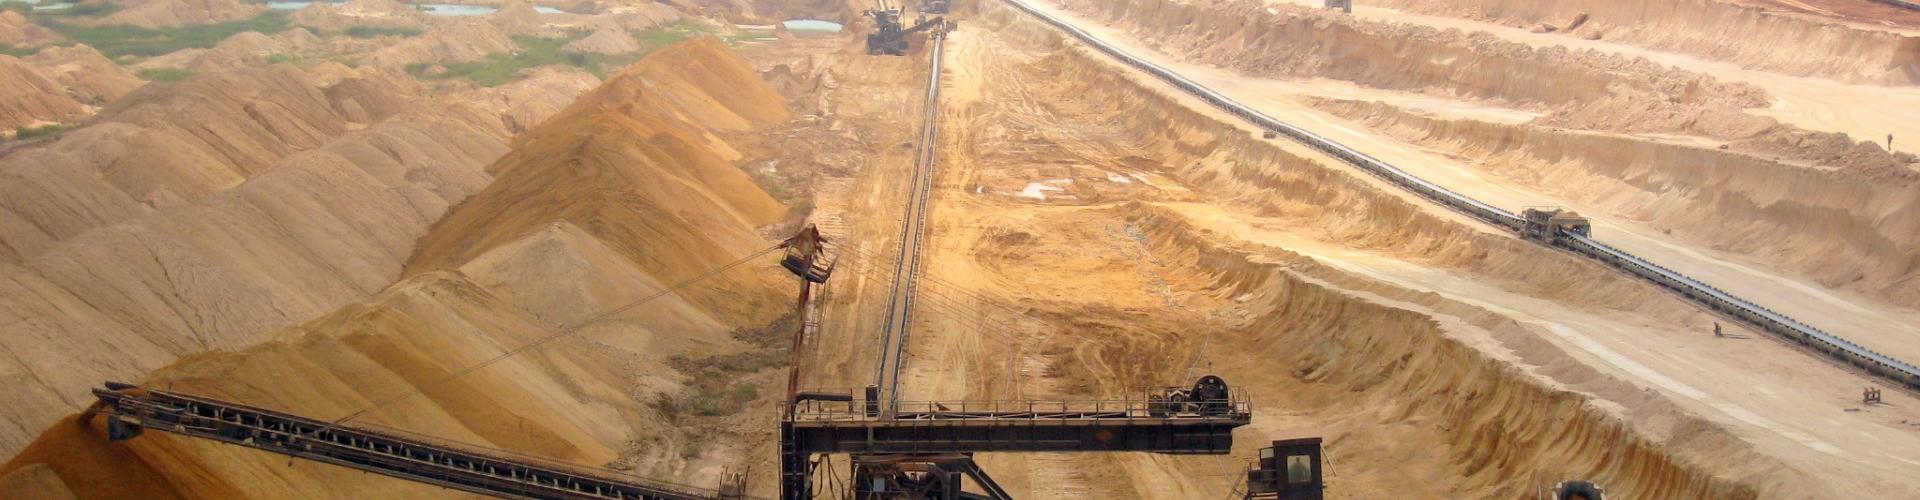 Phosphate mining in Togo, 2007